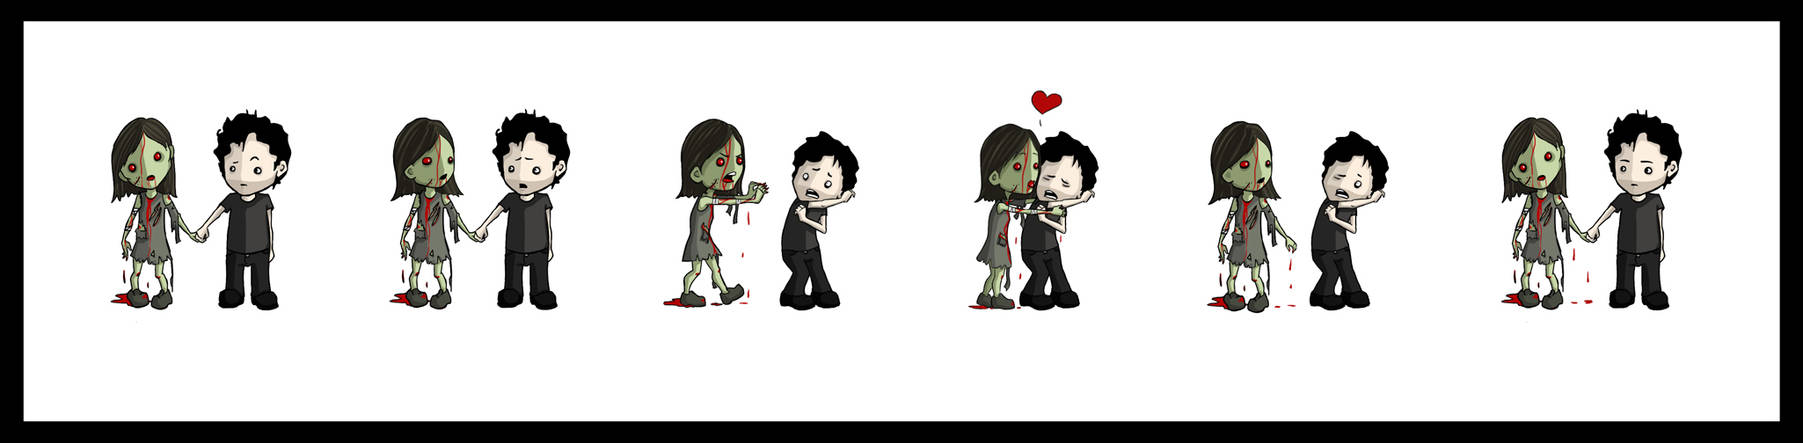 Zombies need love.